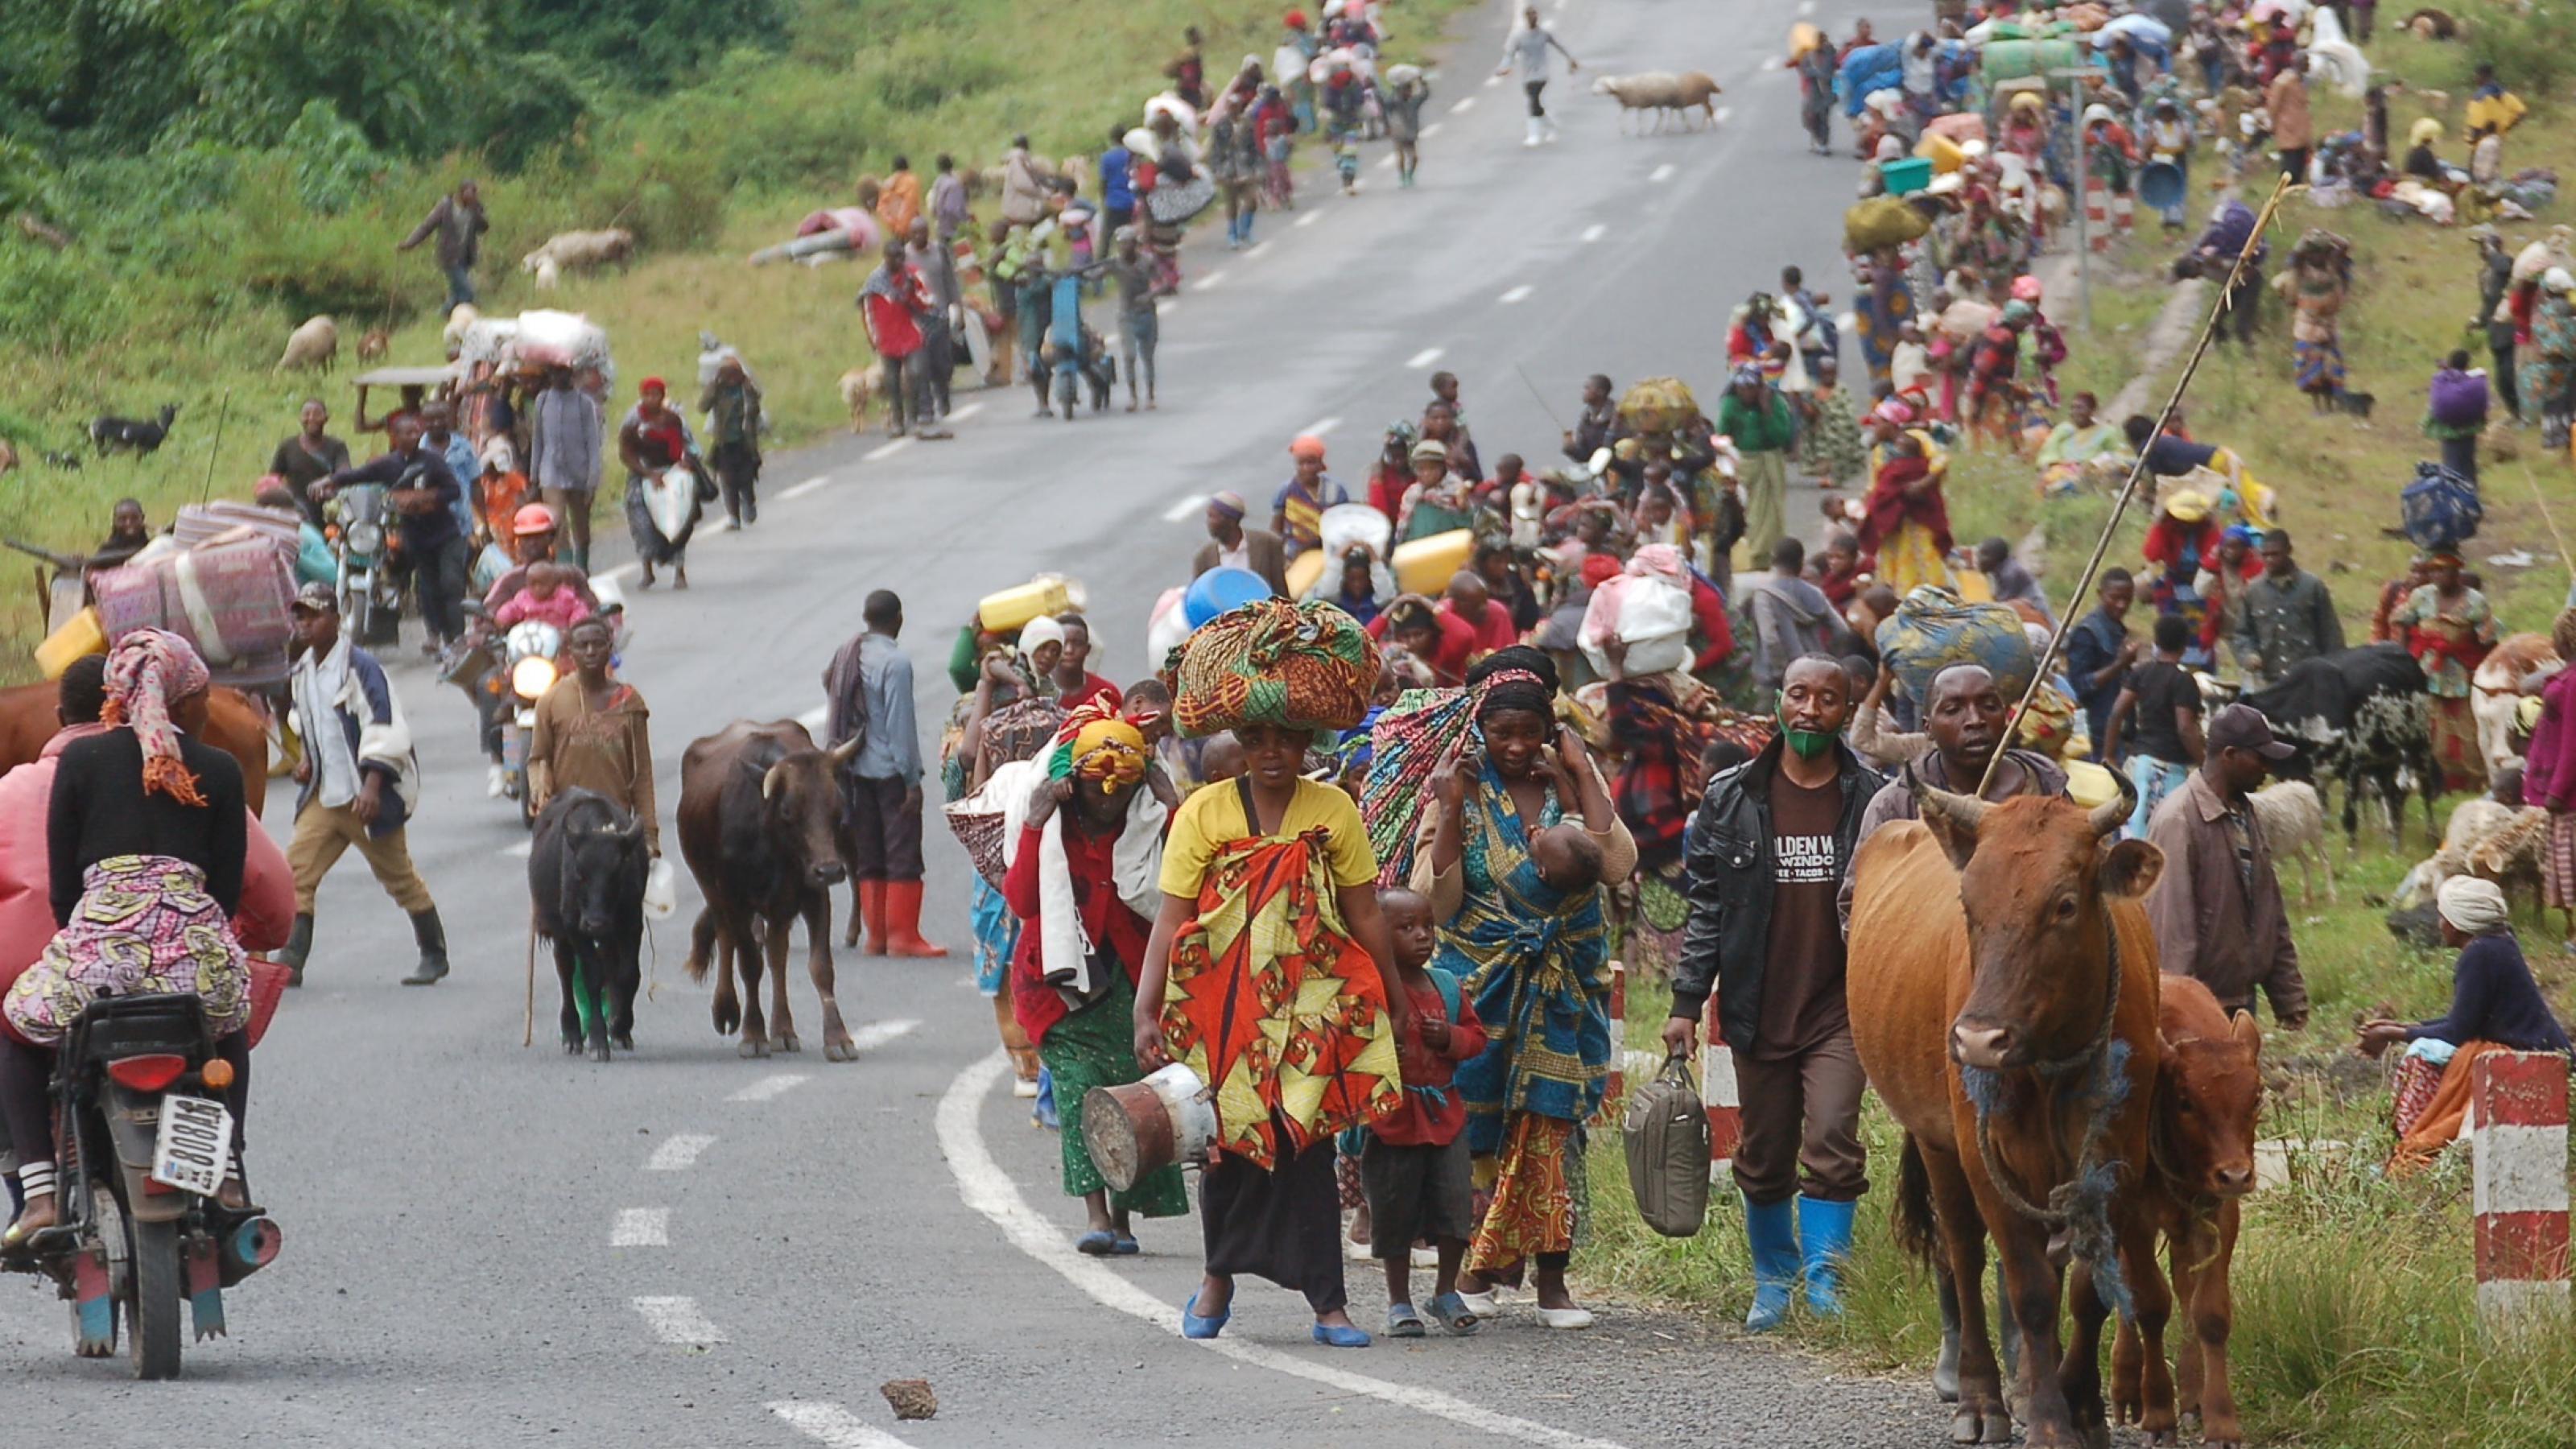 Zu sehen ist eine Asphaltstraße, darauf viele Menschen, die zu Fuß fliehen. Etliche haben ihre Rinder oder Schafe dabei, andere tragen Matratzen und andere Besitztümer.